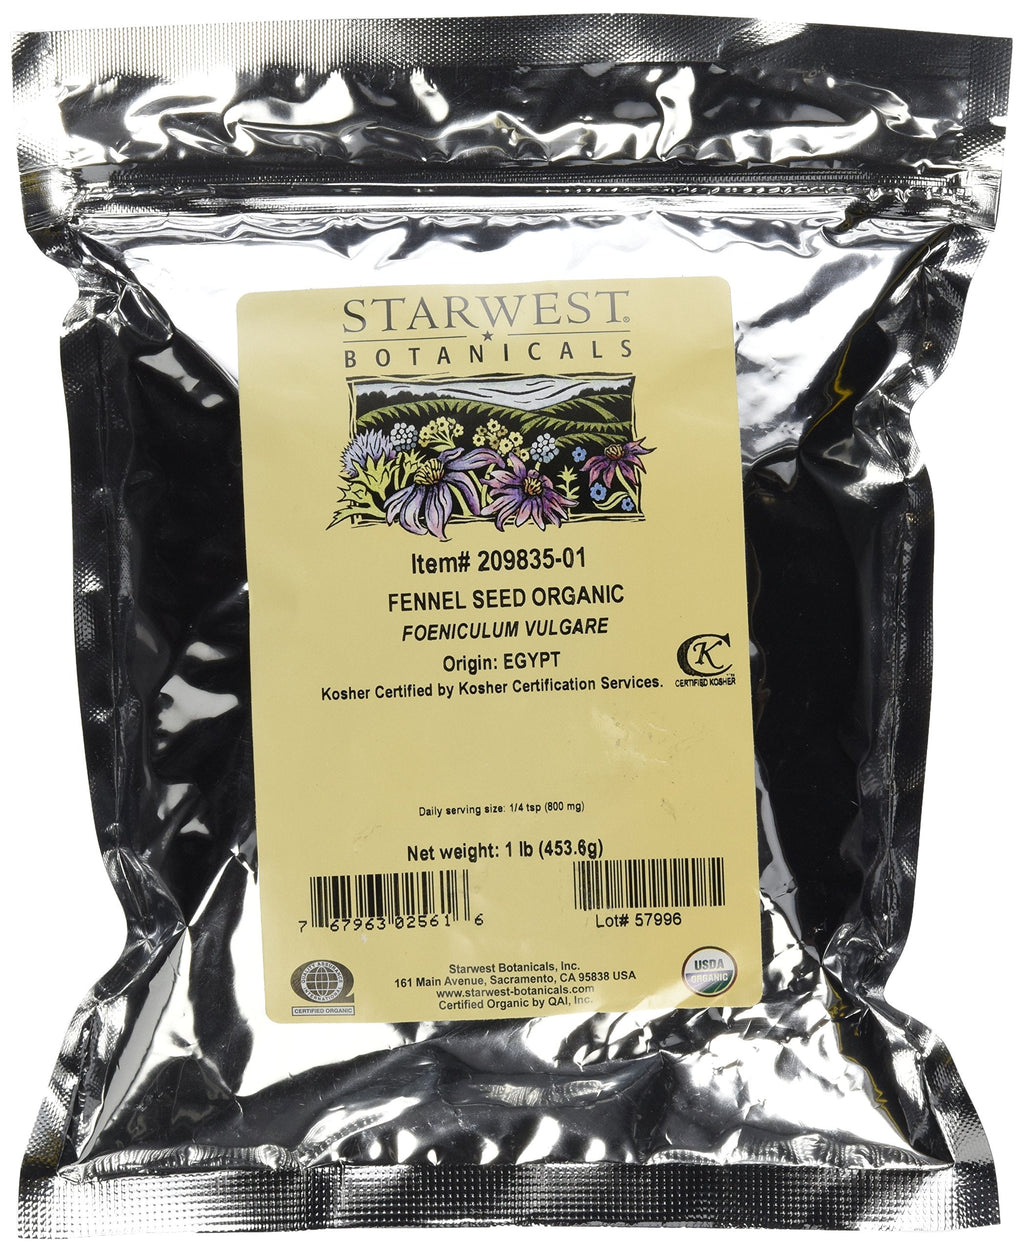 [Australia] - Starwest Botanicals Organic Fennel Seeds, 1 Pound 